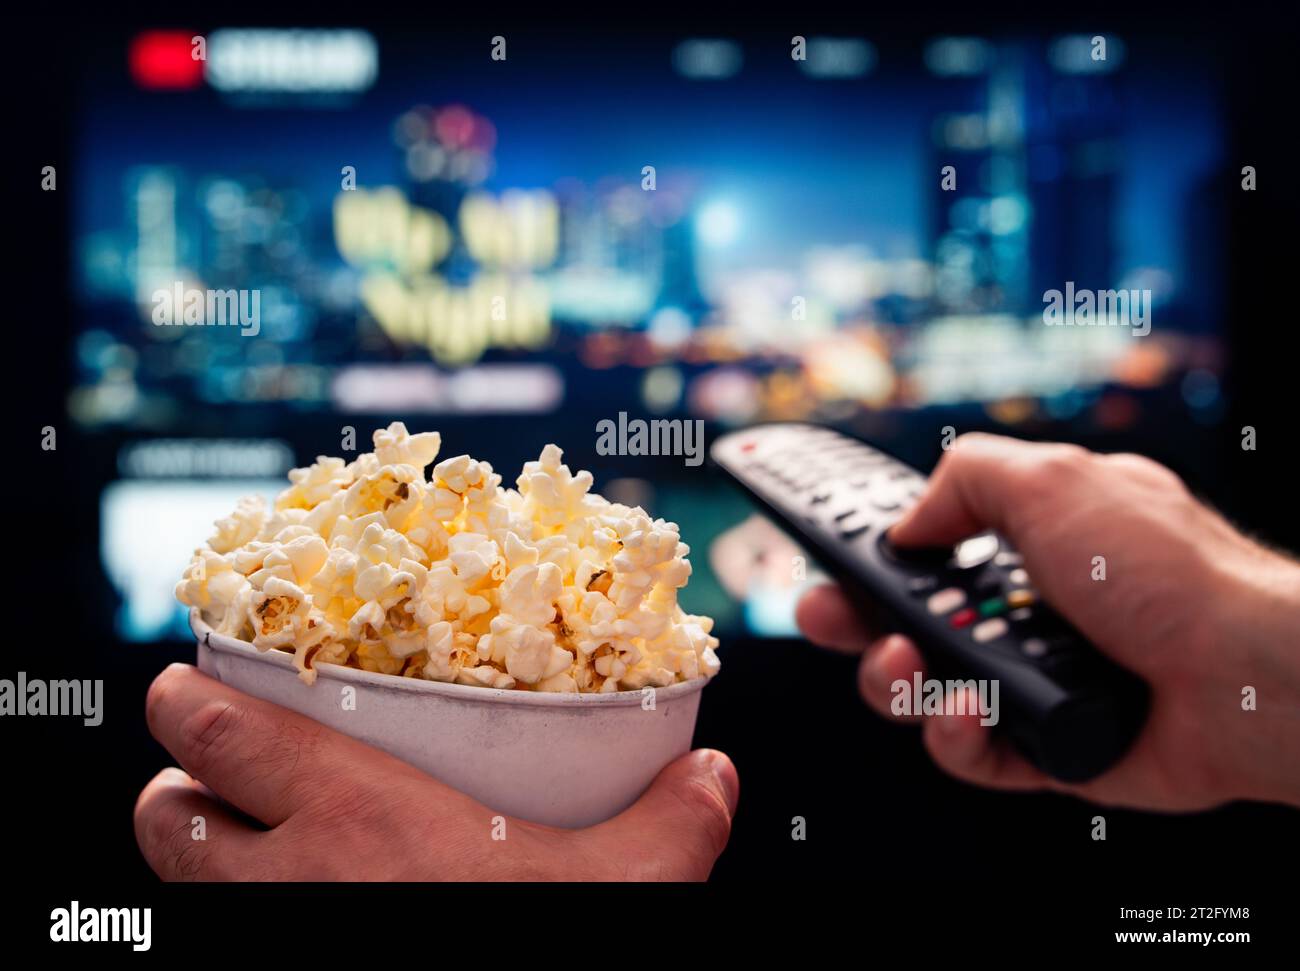 TV-Filmabend mit Familie. VOD-Plattform streamen. Popcorn und Fernbedienung. Videounterhaltung und Snack. Online-Film im Fernsehen abspielen. Stockfoto